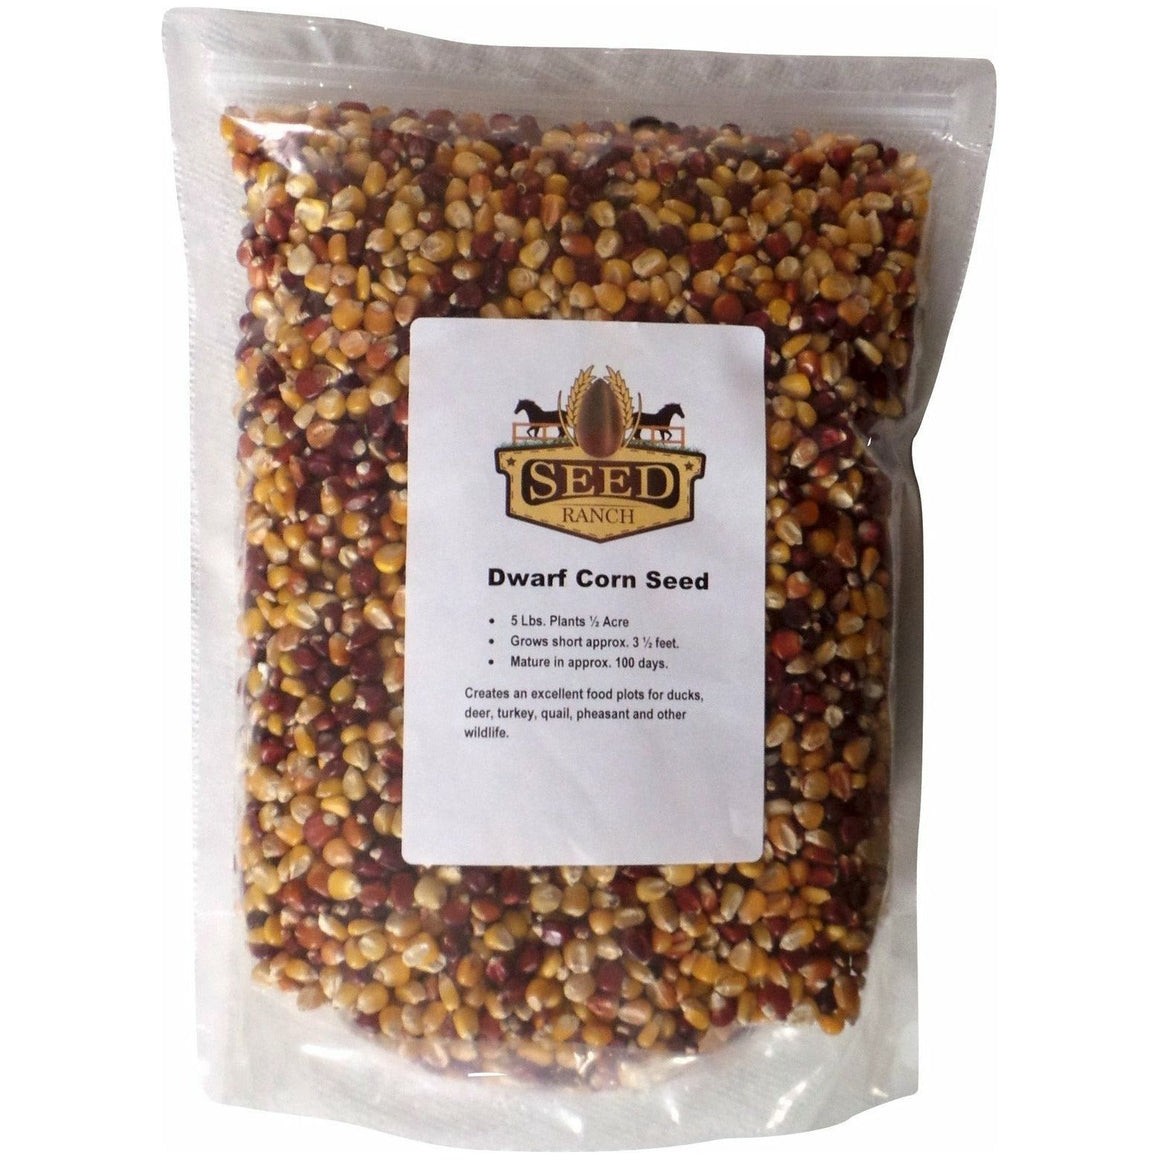 Dwarf Corn Food Plot Seed - 1 Lb. - Seed World